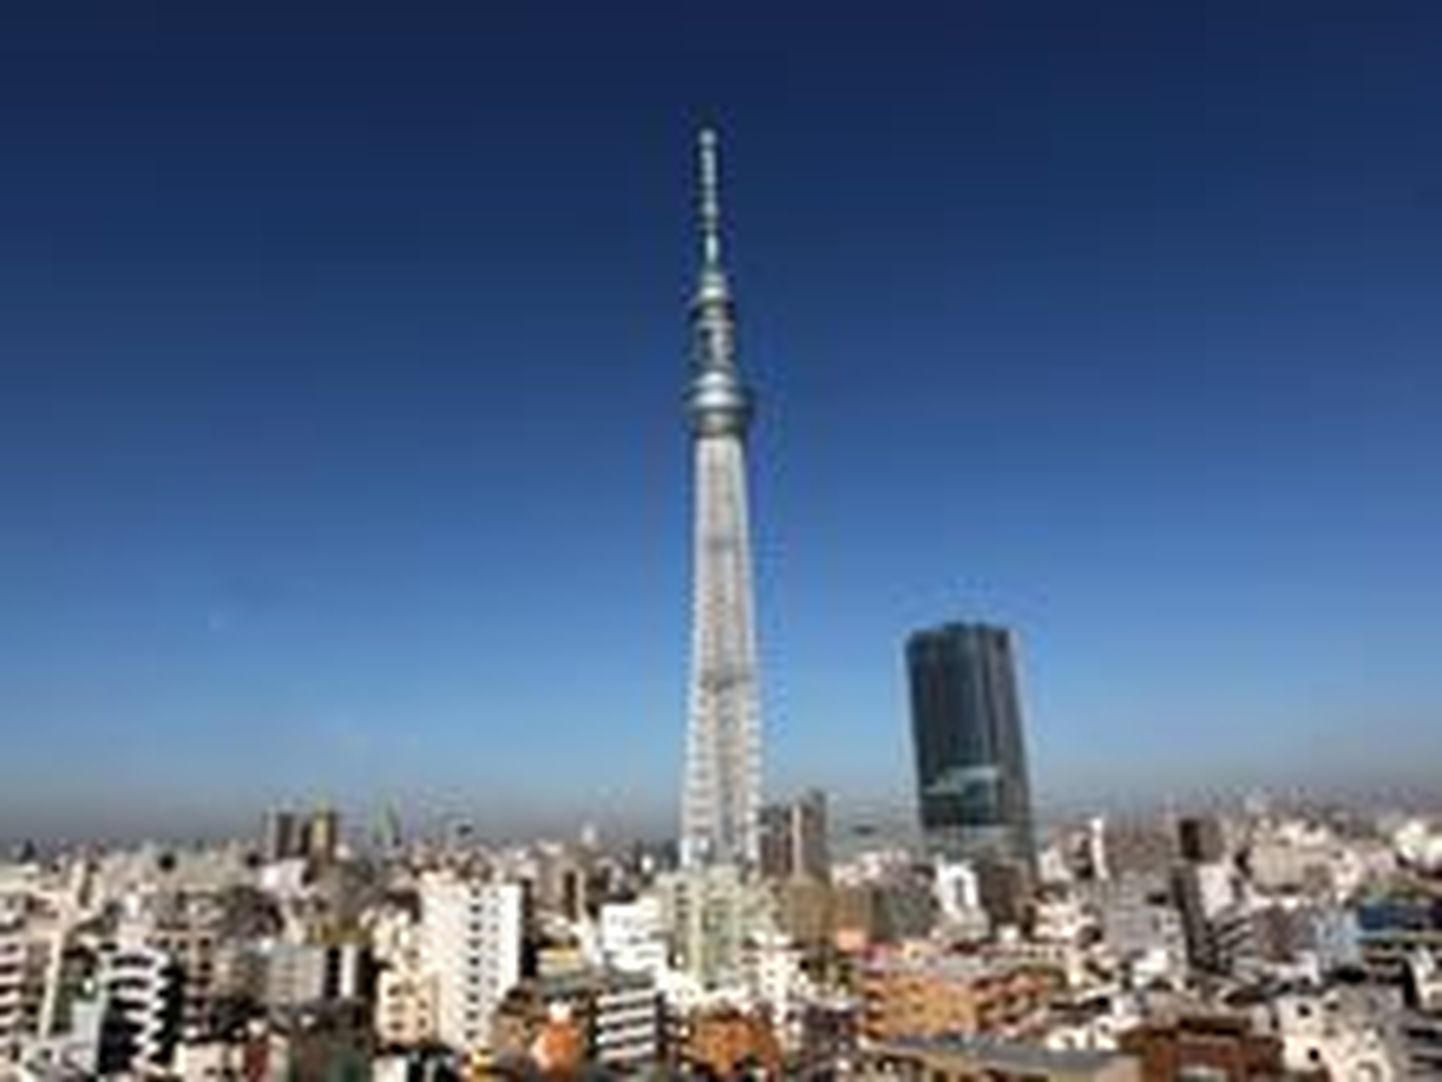 Новая телебашня японской столицы Tokyo Sky Tree высотой 634 метра официально признана составителями Книги рекордов Гиннеса "самой высокой башней мира".